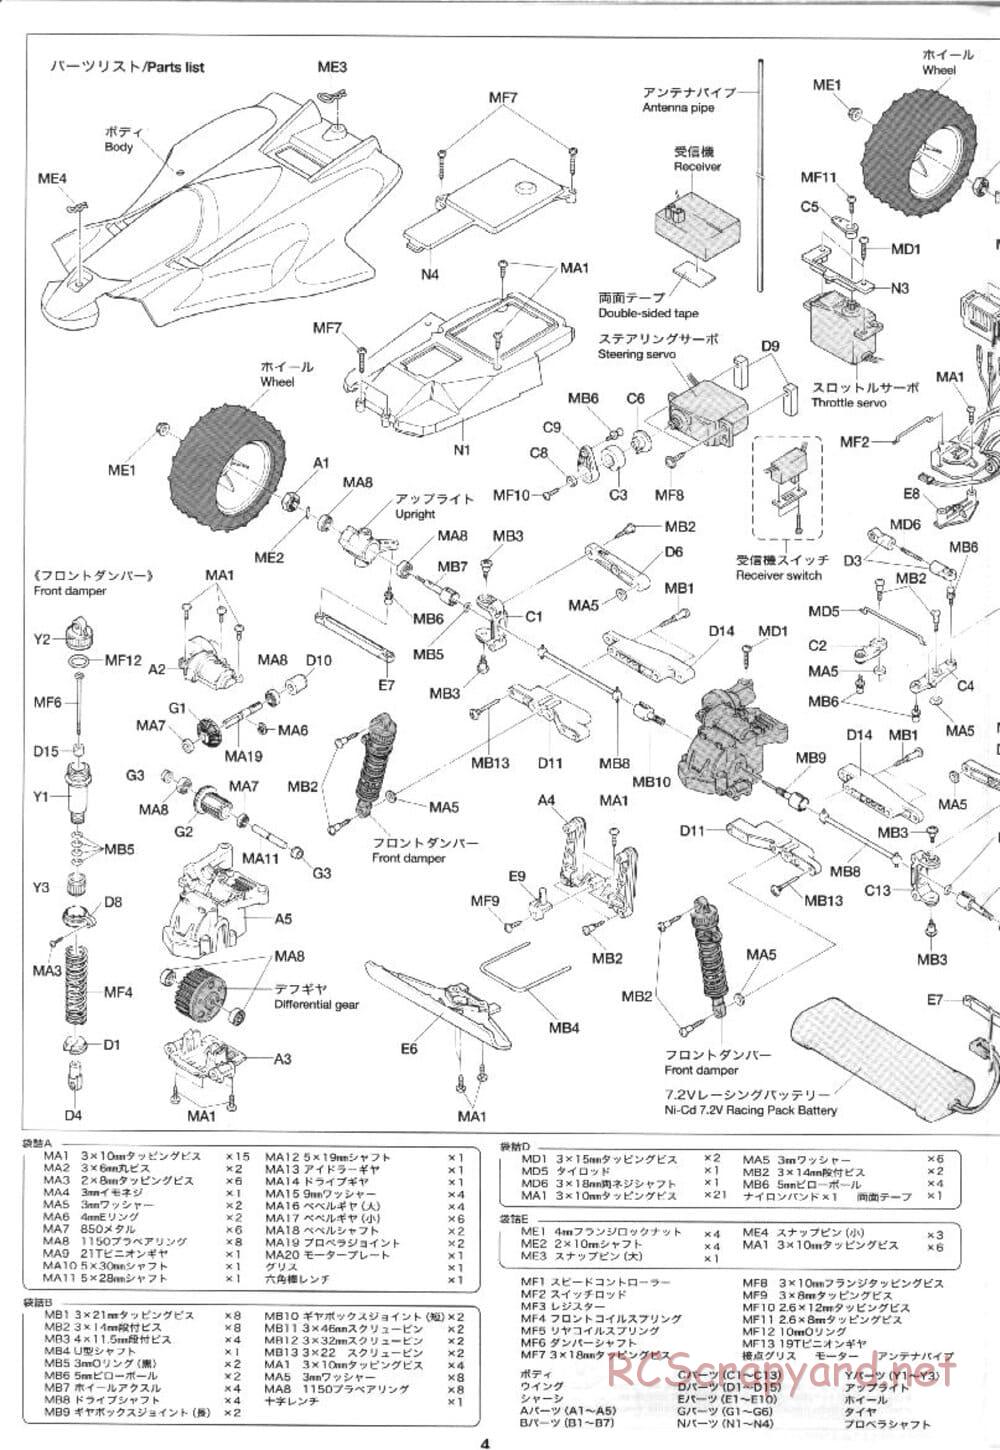 Tamiya - XB Super Manta Ray - DF-01 Chassis - Manual - Page 4